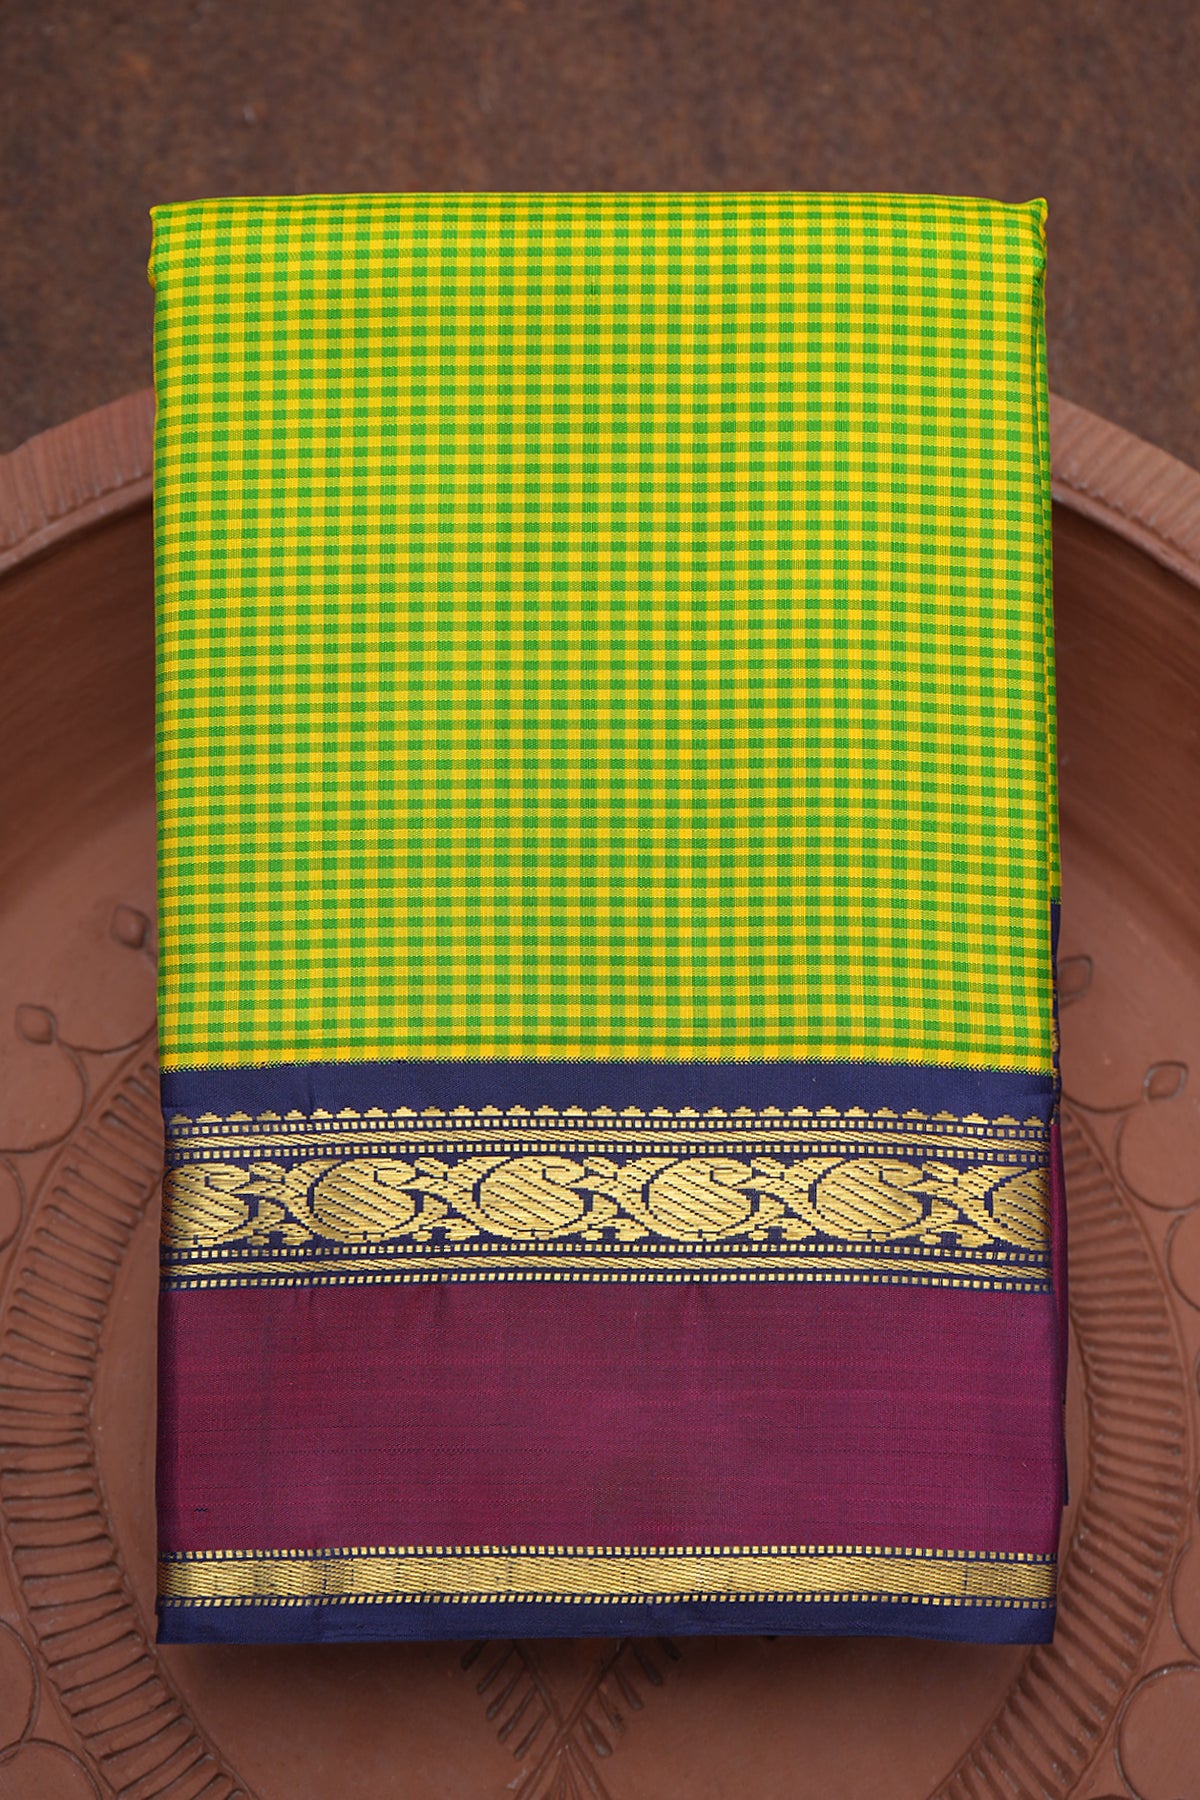 Korvai Border Green And Yellow Kanchipuram Silk Saree